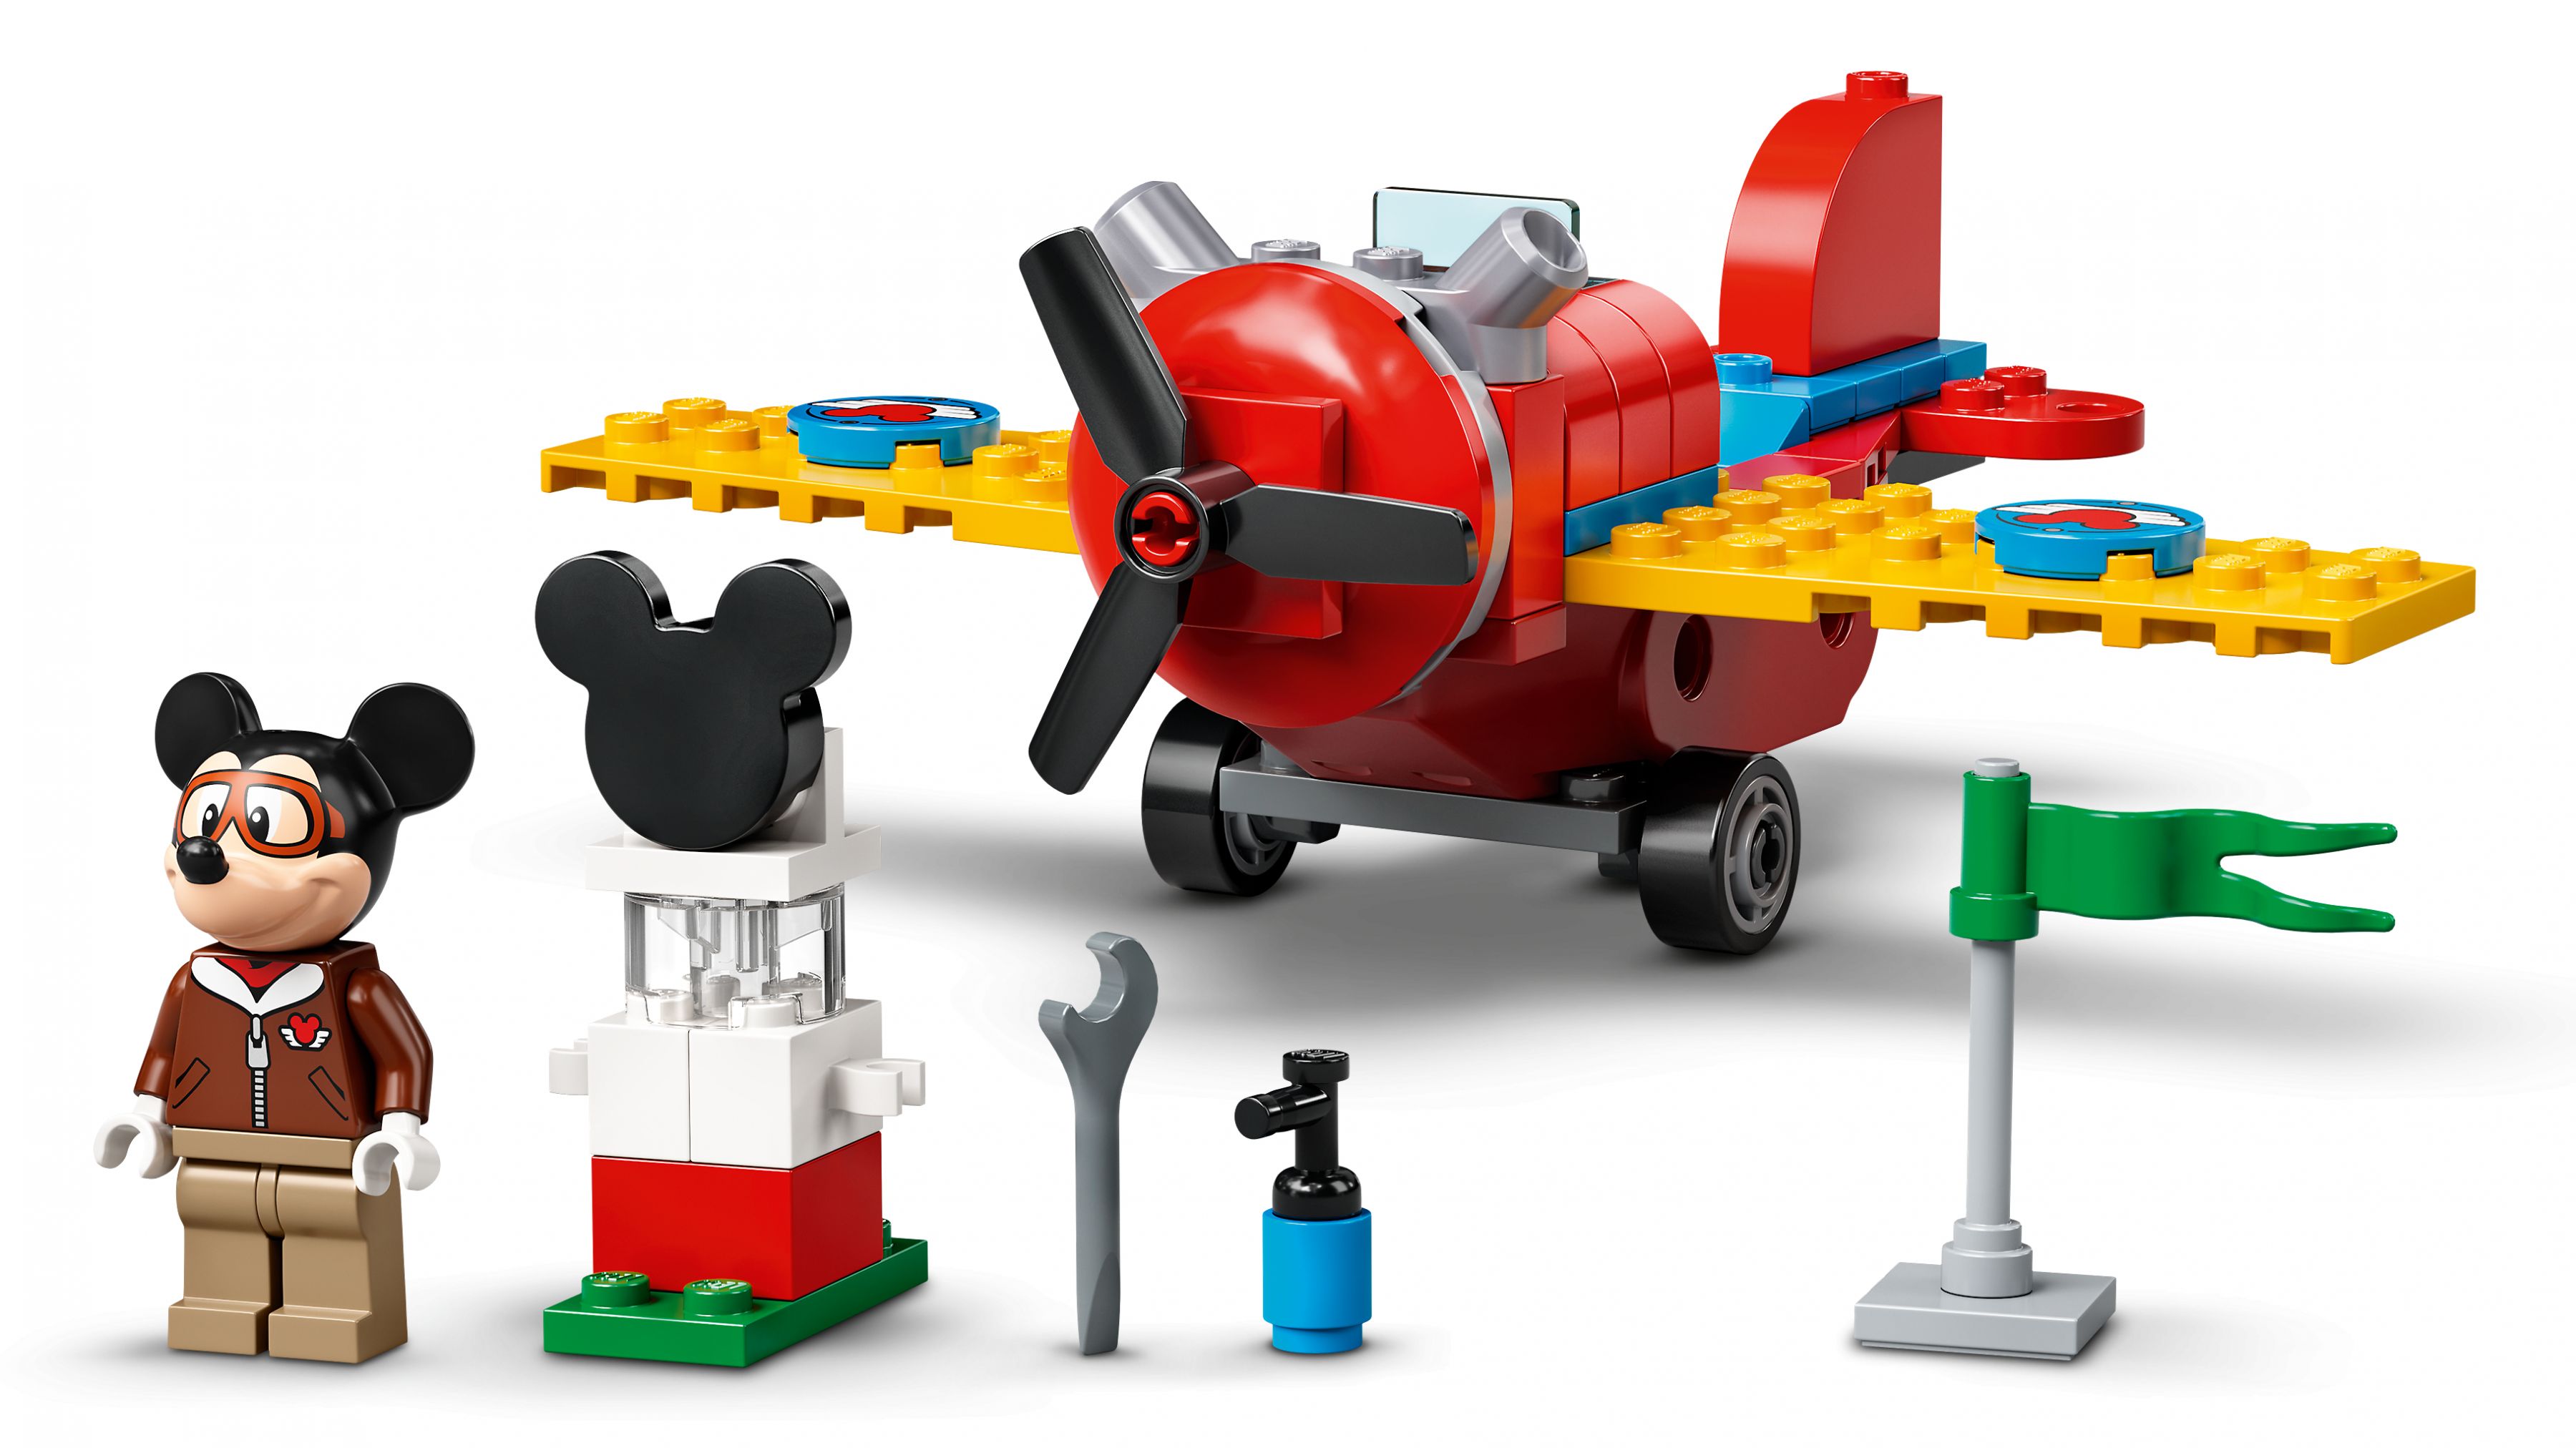 LEGO Disney 10772 Mickys Propellerflugzeug LEGO_10772_web_sec01_nobg.jpg